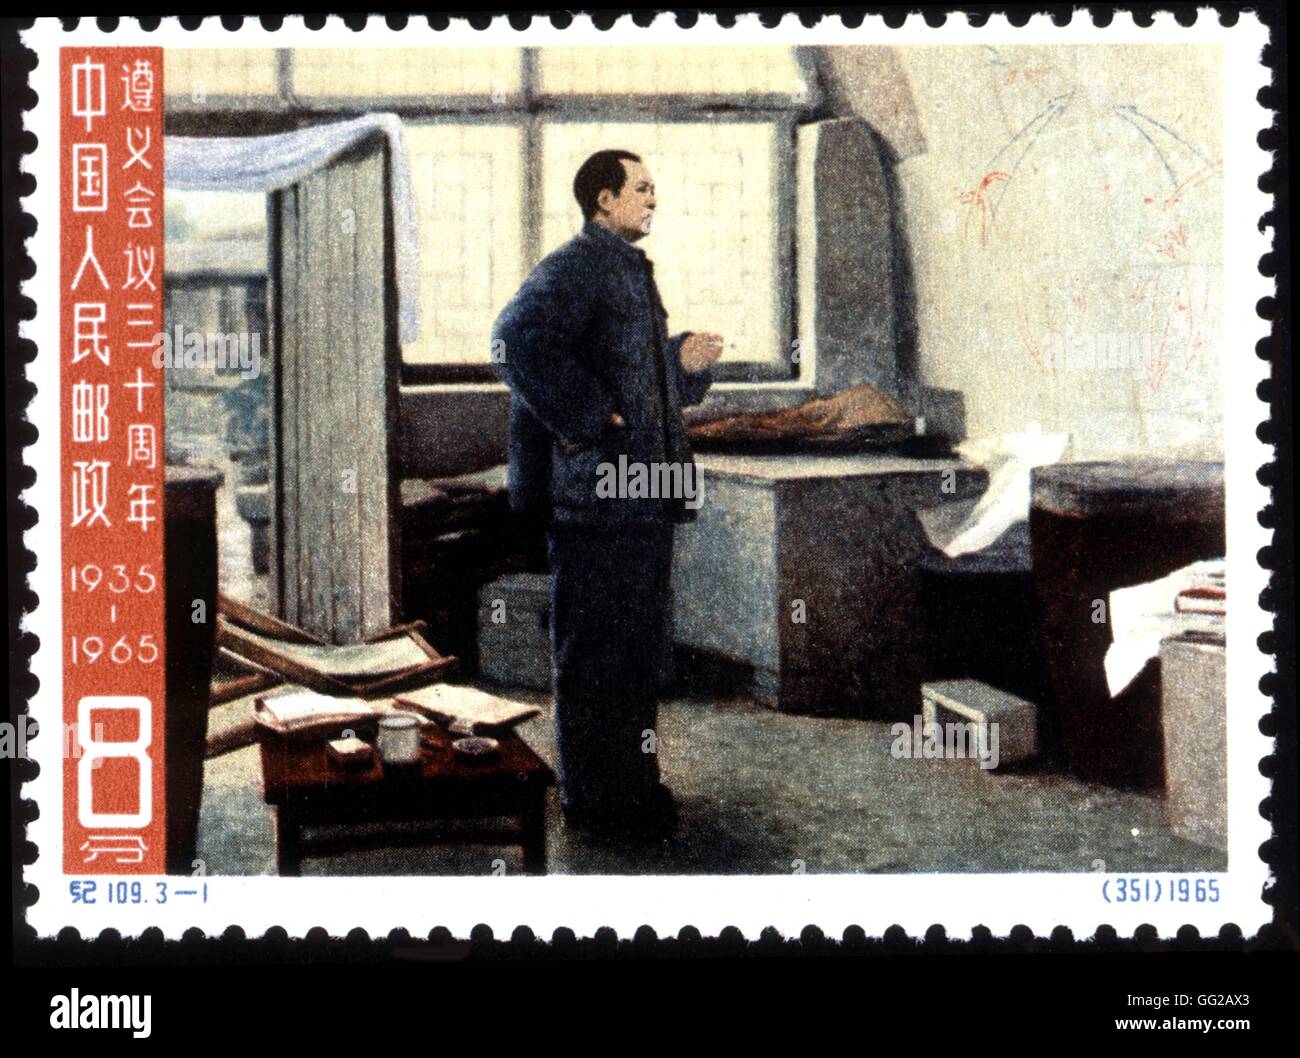 Timbre-poste avec Mao Zedong. Conférence Tsunyi. Timbres pour le 30e anniversaire de la longue marche de la Chine 1935 Banque D'Images